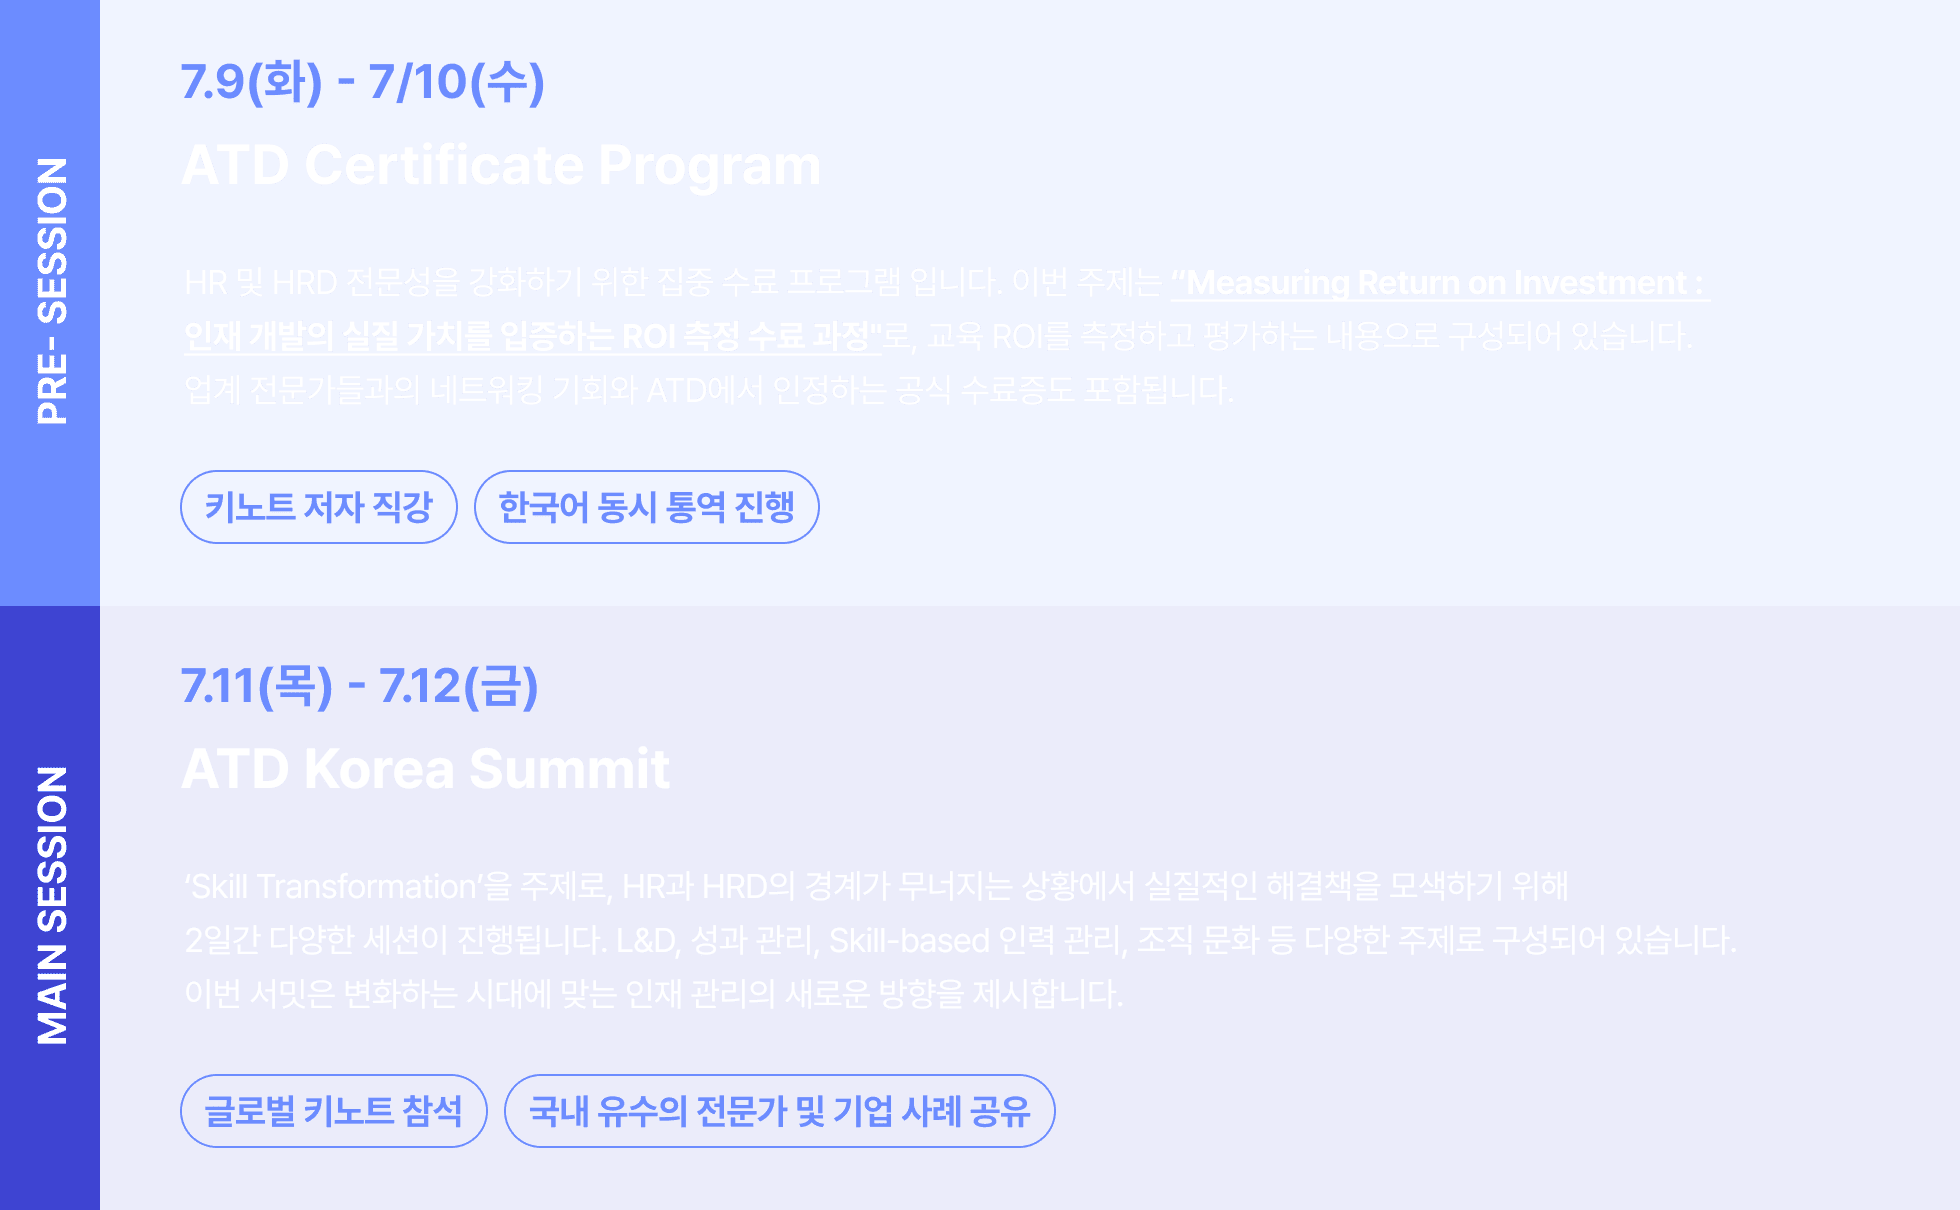 atd certificate program